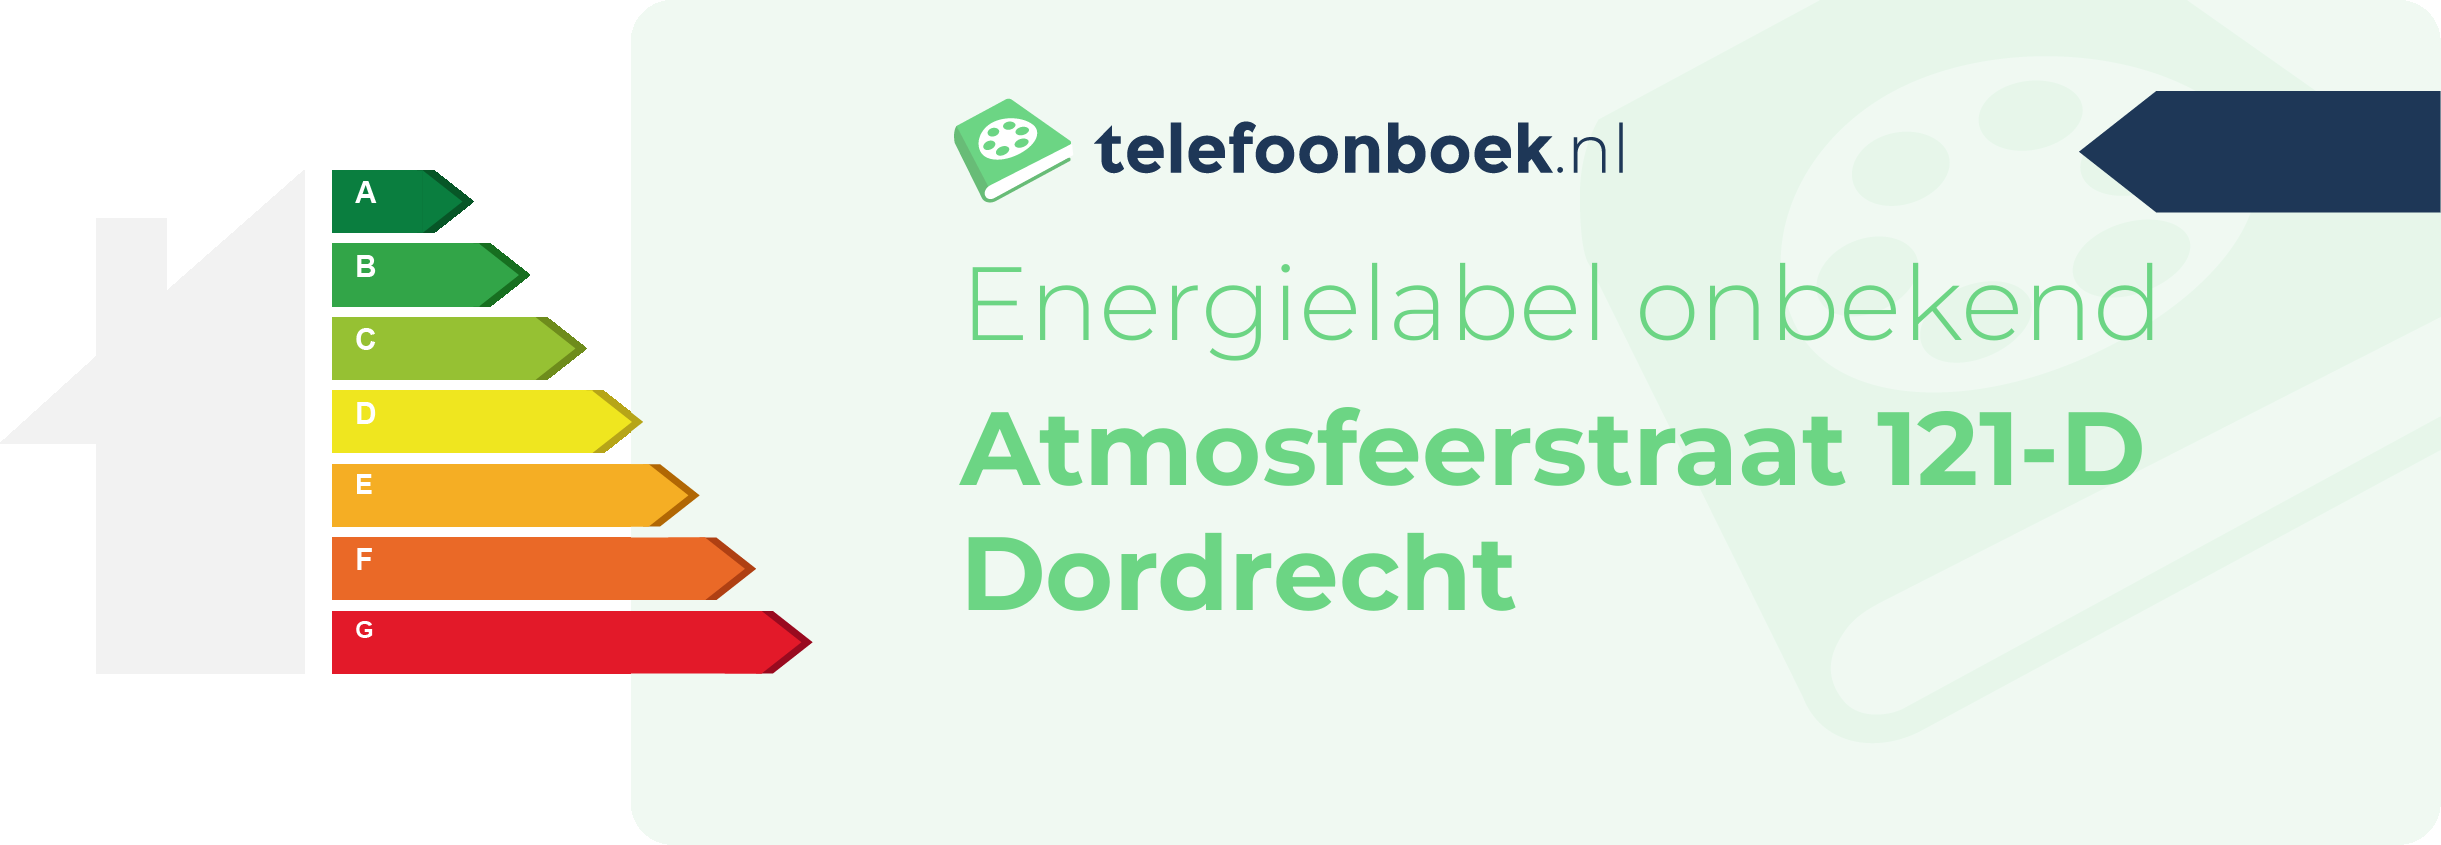 Energielabel Atmosfeerstraat 121-D Dordrecht